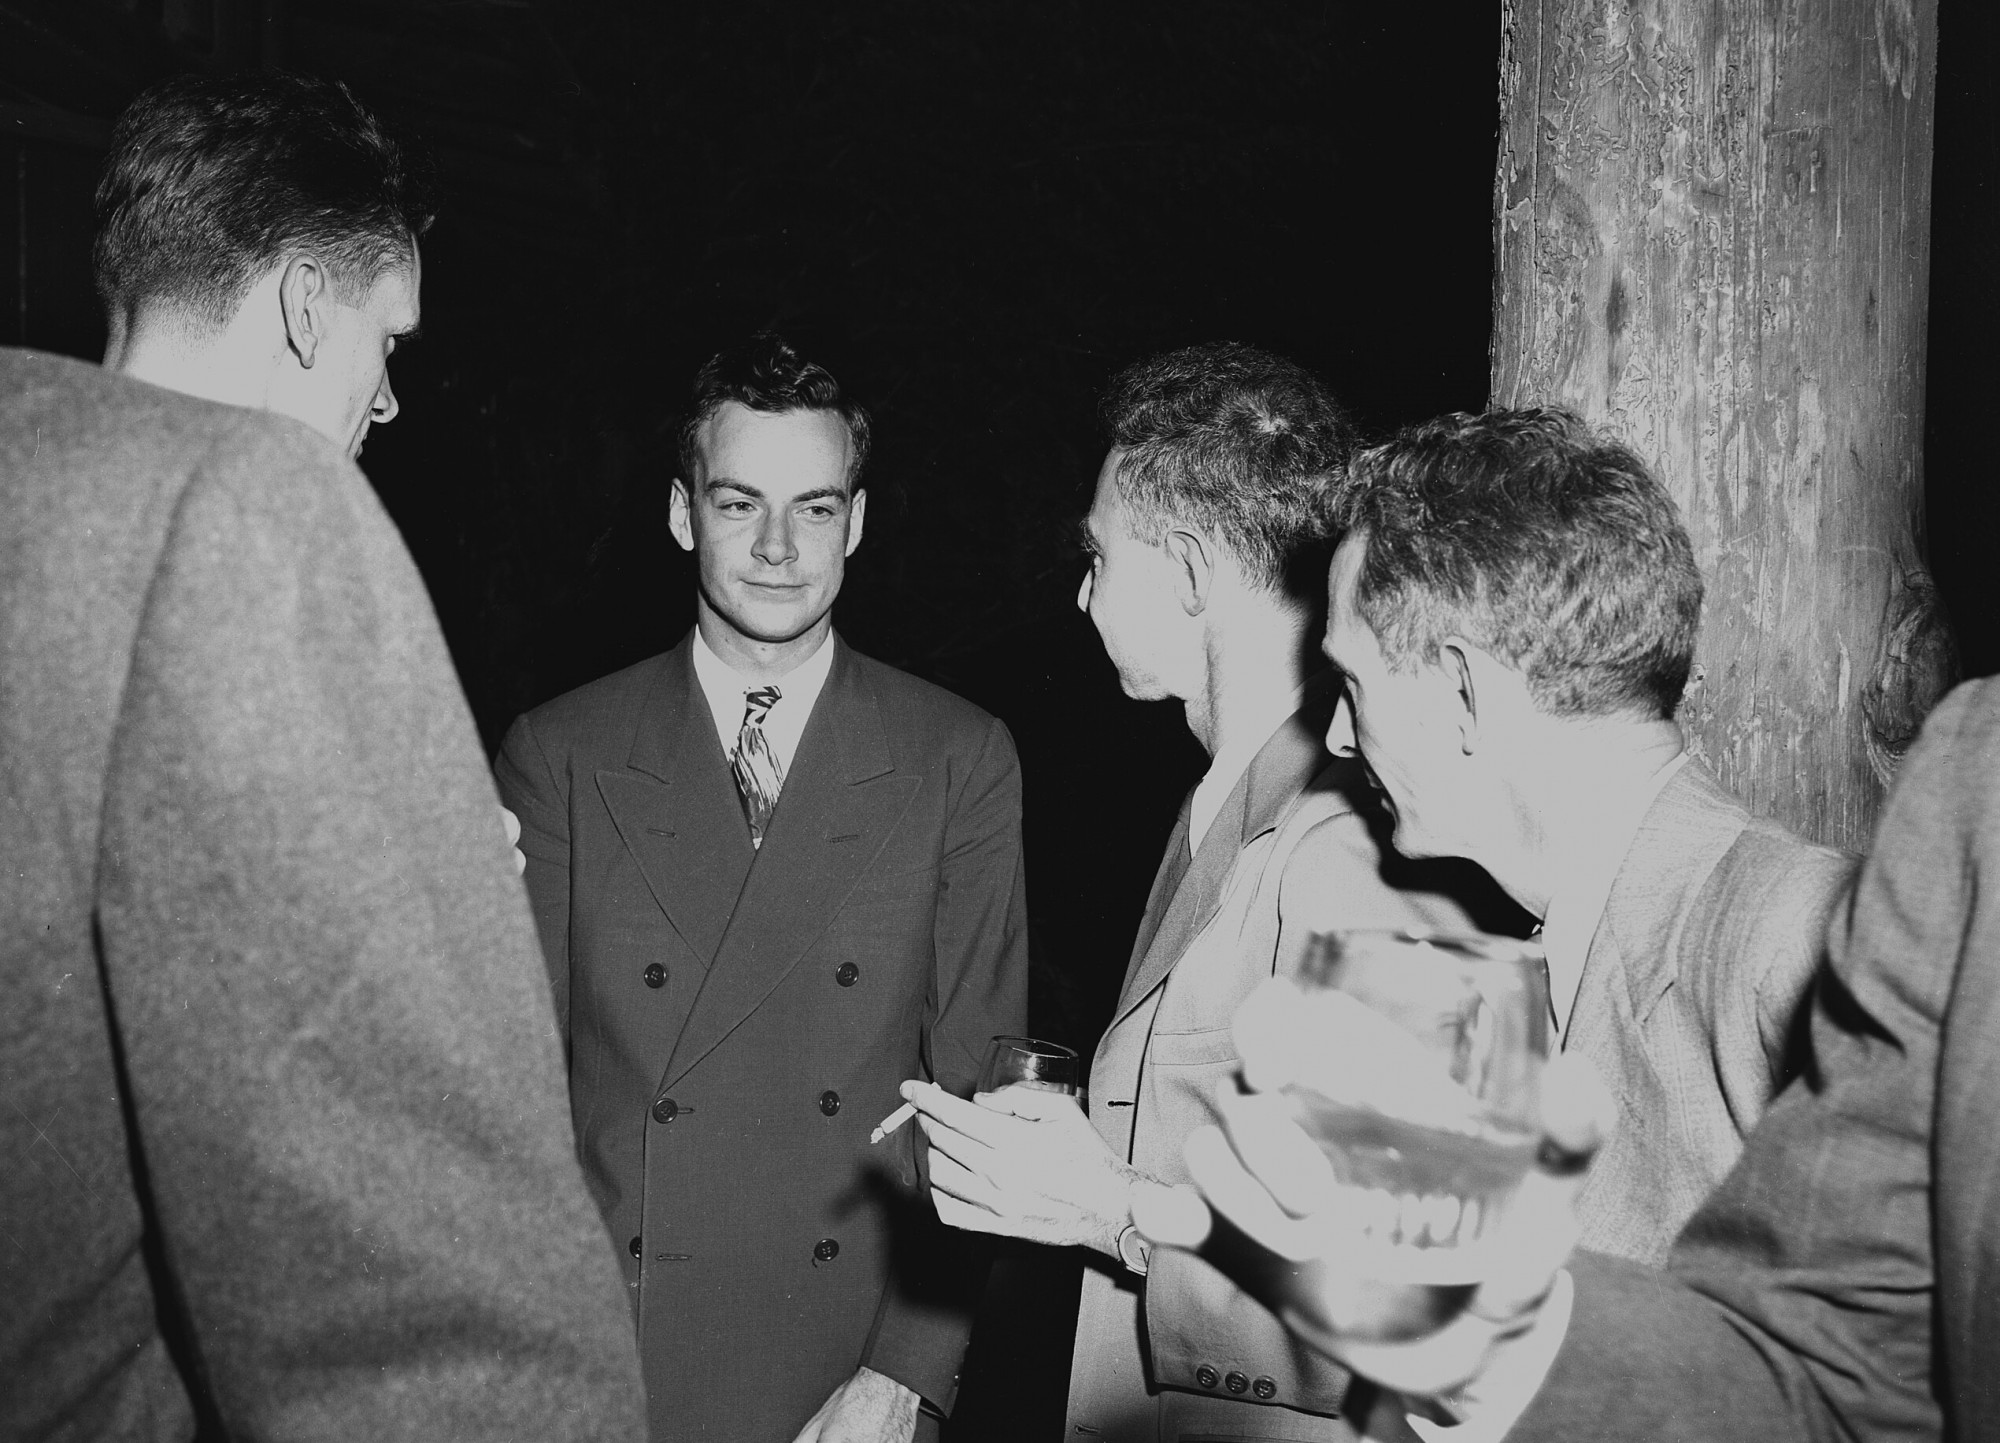 Richard Feynman (szemben) és Robert Oppenheimer (a képen tőle jobbra) a Los Alamos Nemzeti Laboratóriumban, valamikor 1943 és 1945 között